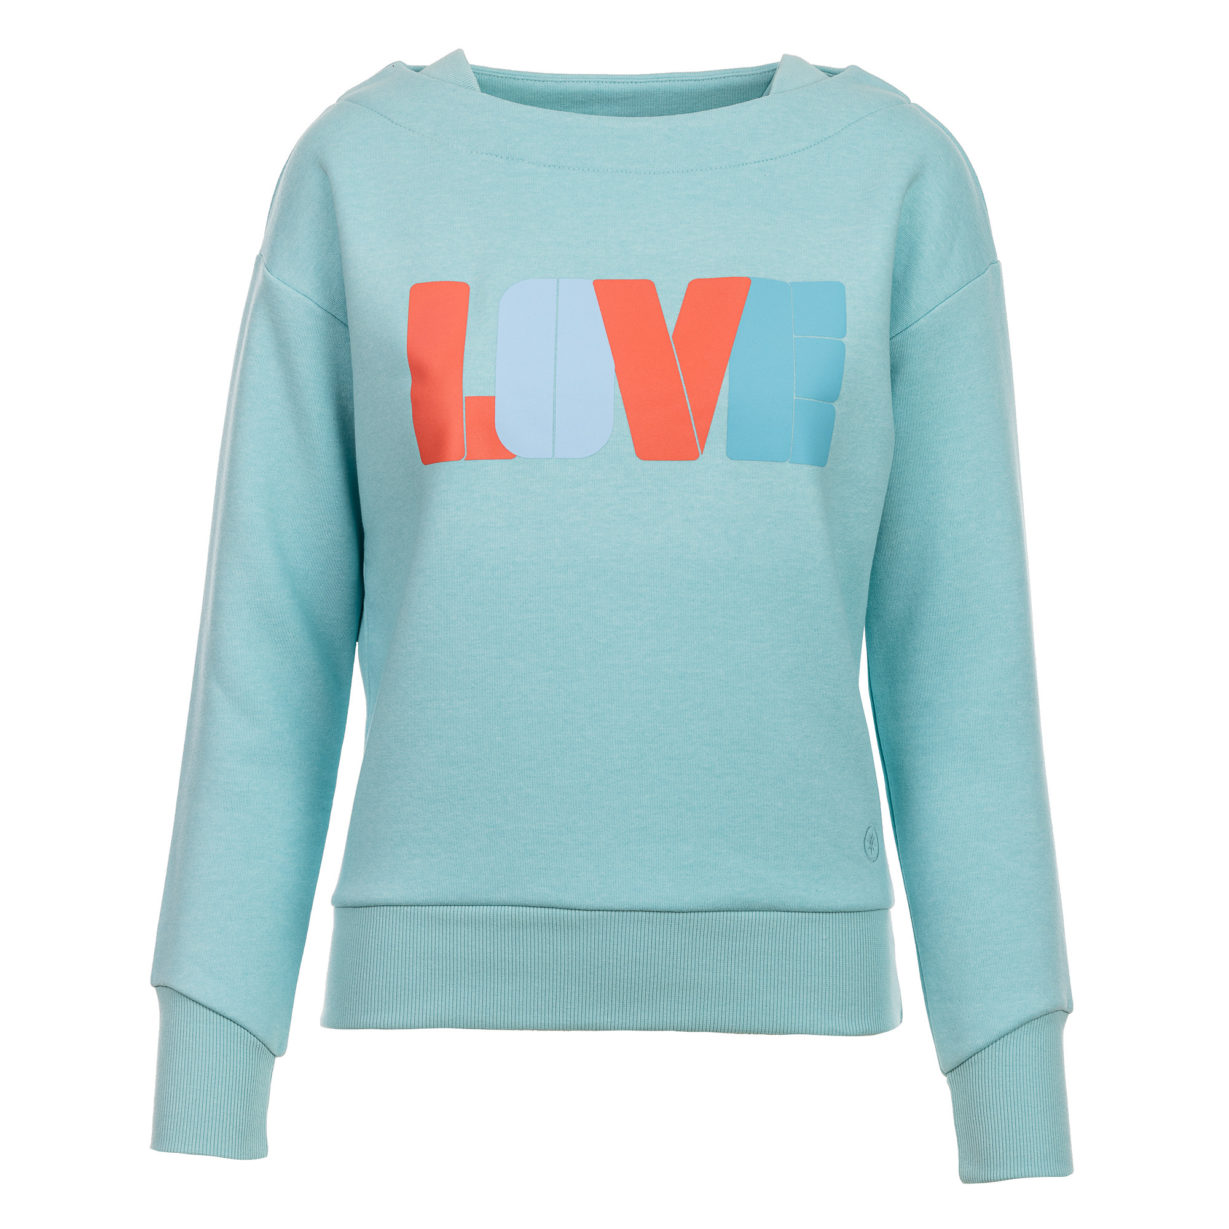 Kulóóntje - Sweatshirt mit Boatneckkragen und LOVE Print Aqua Front